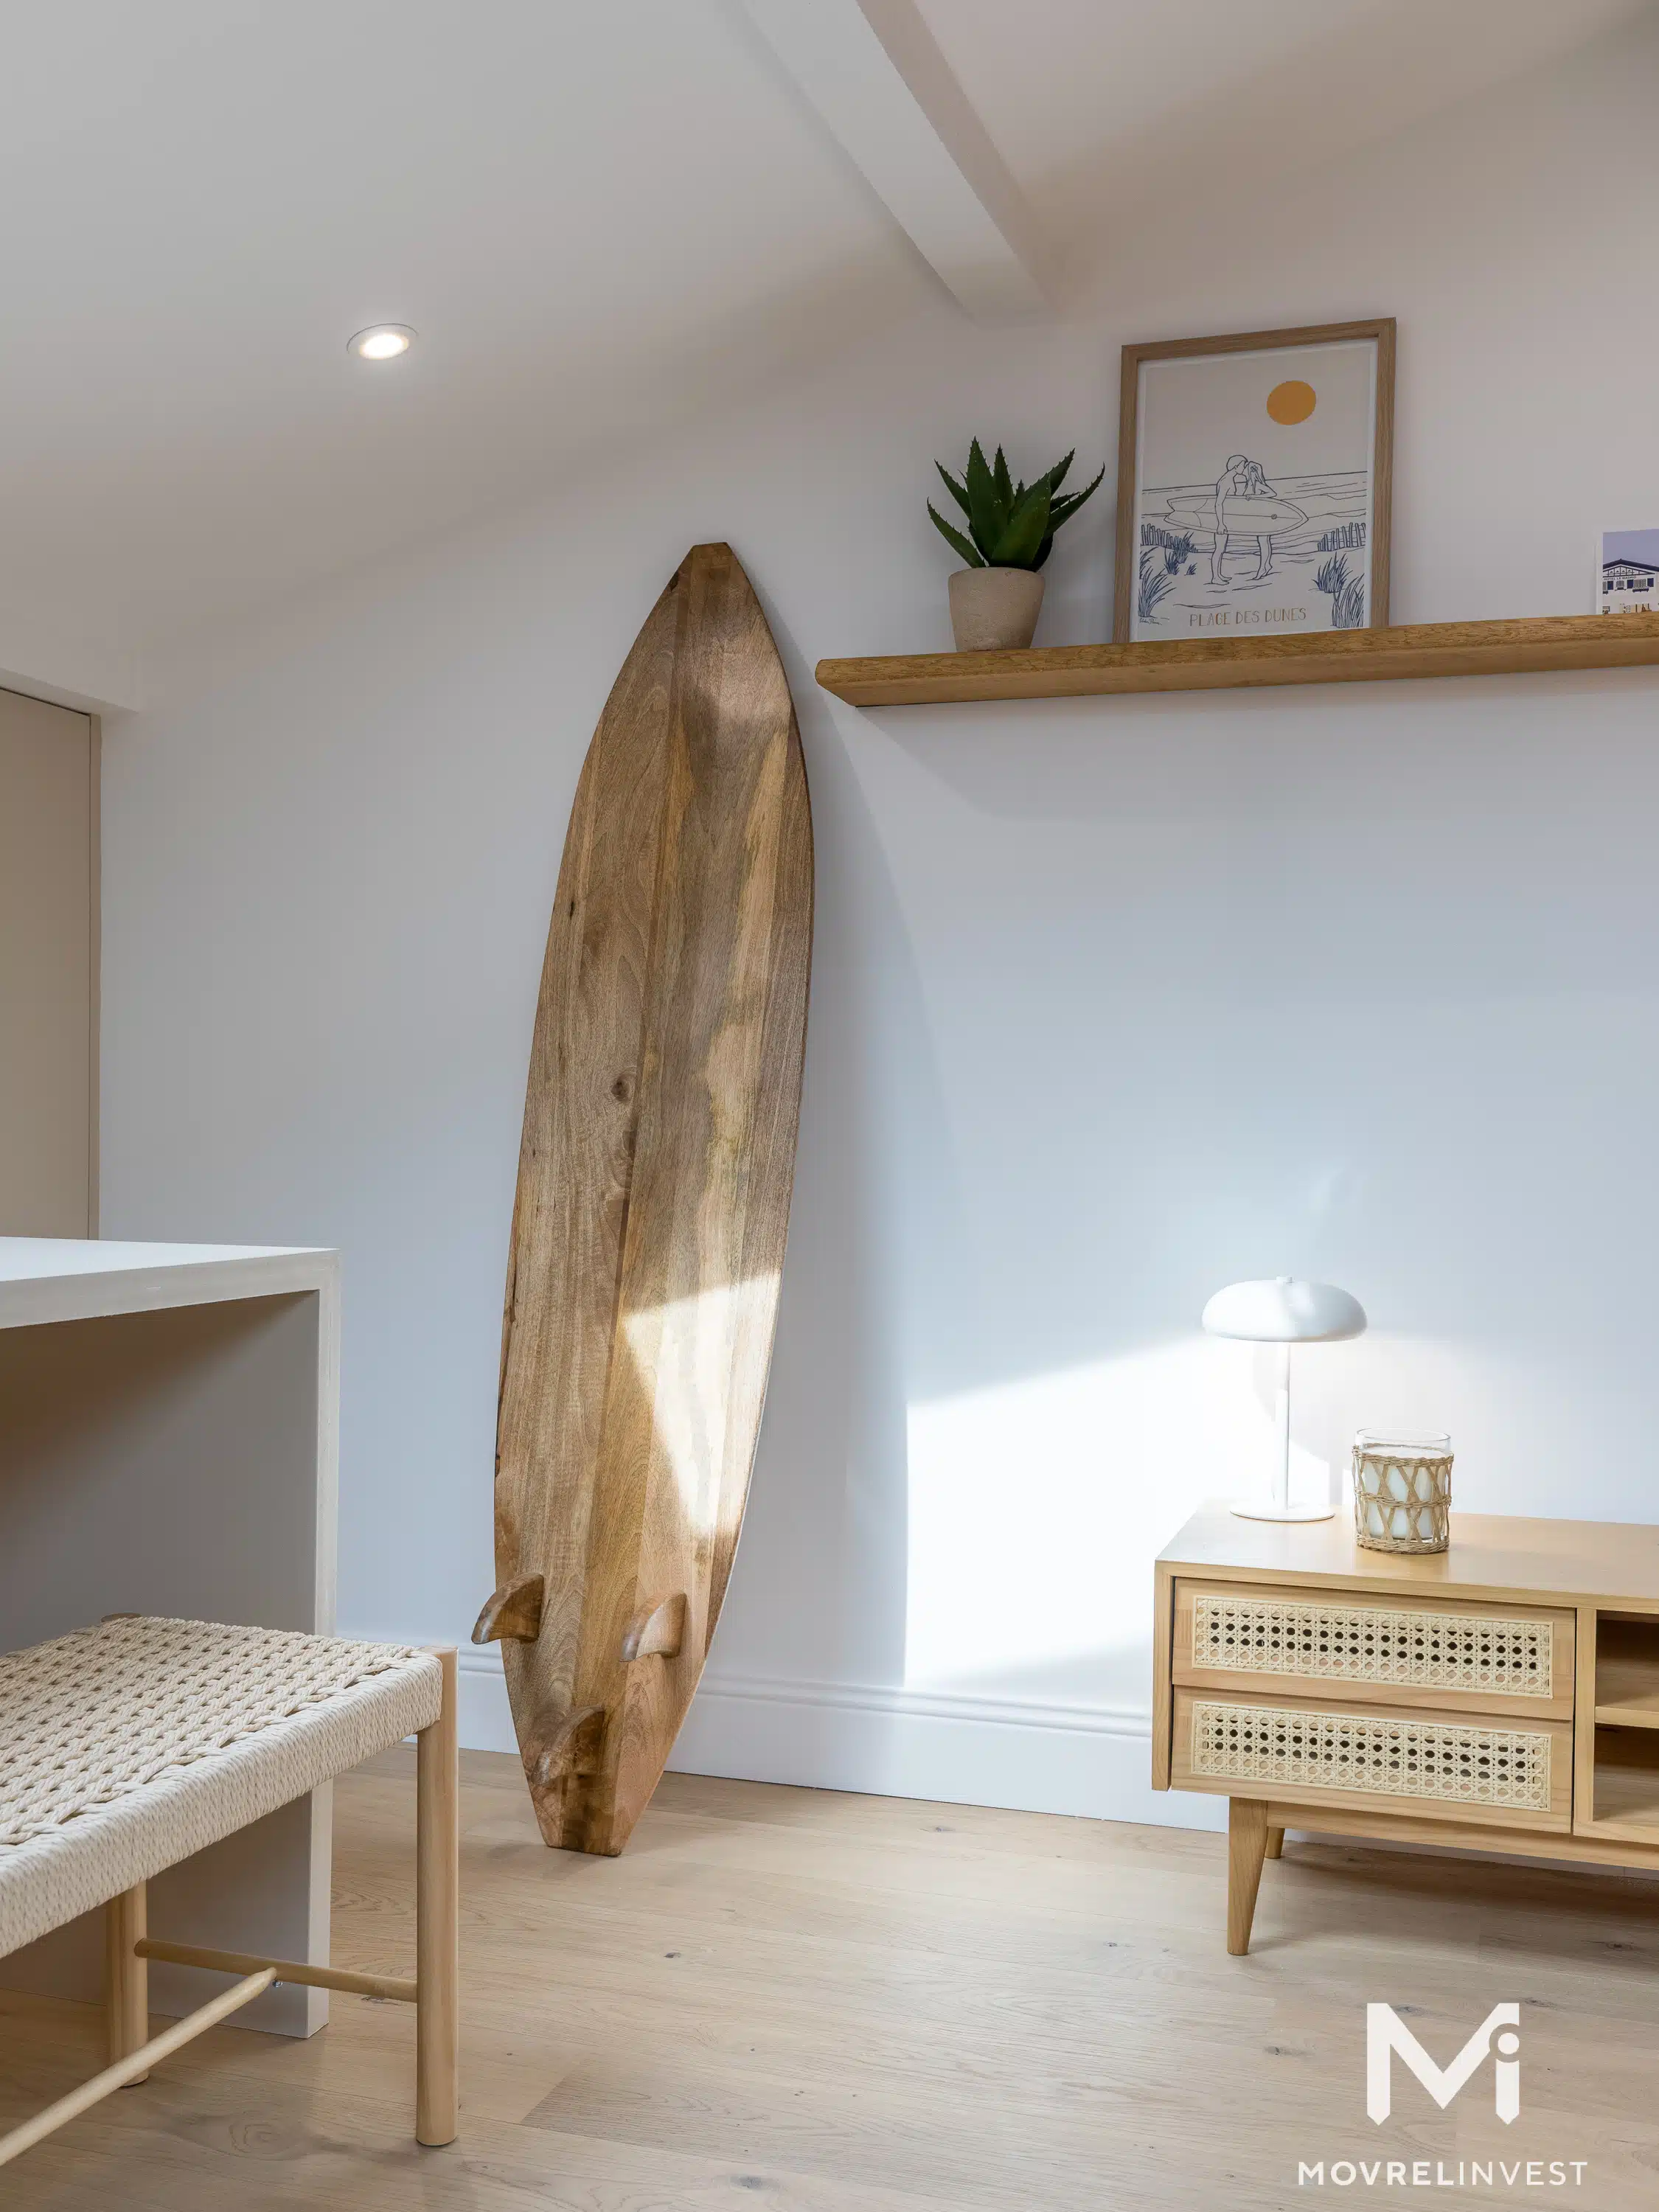 Intérieur minimaliste avec planche de surf décorative.